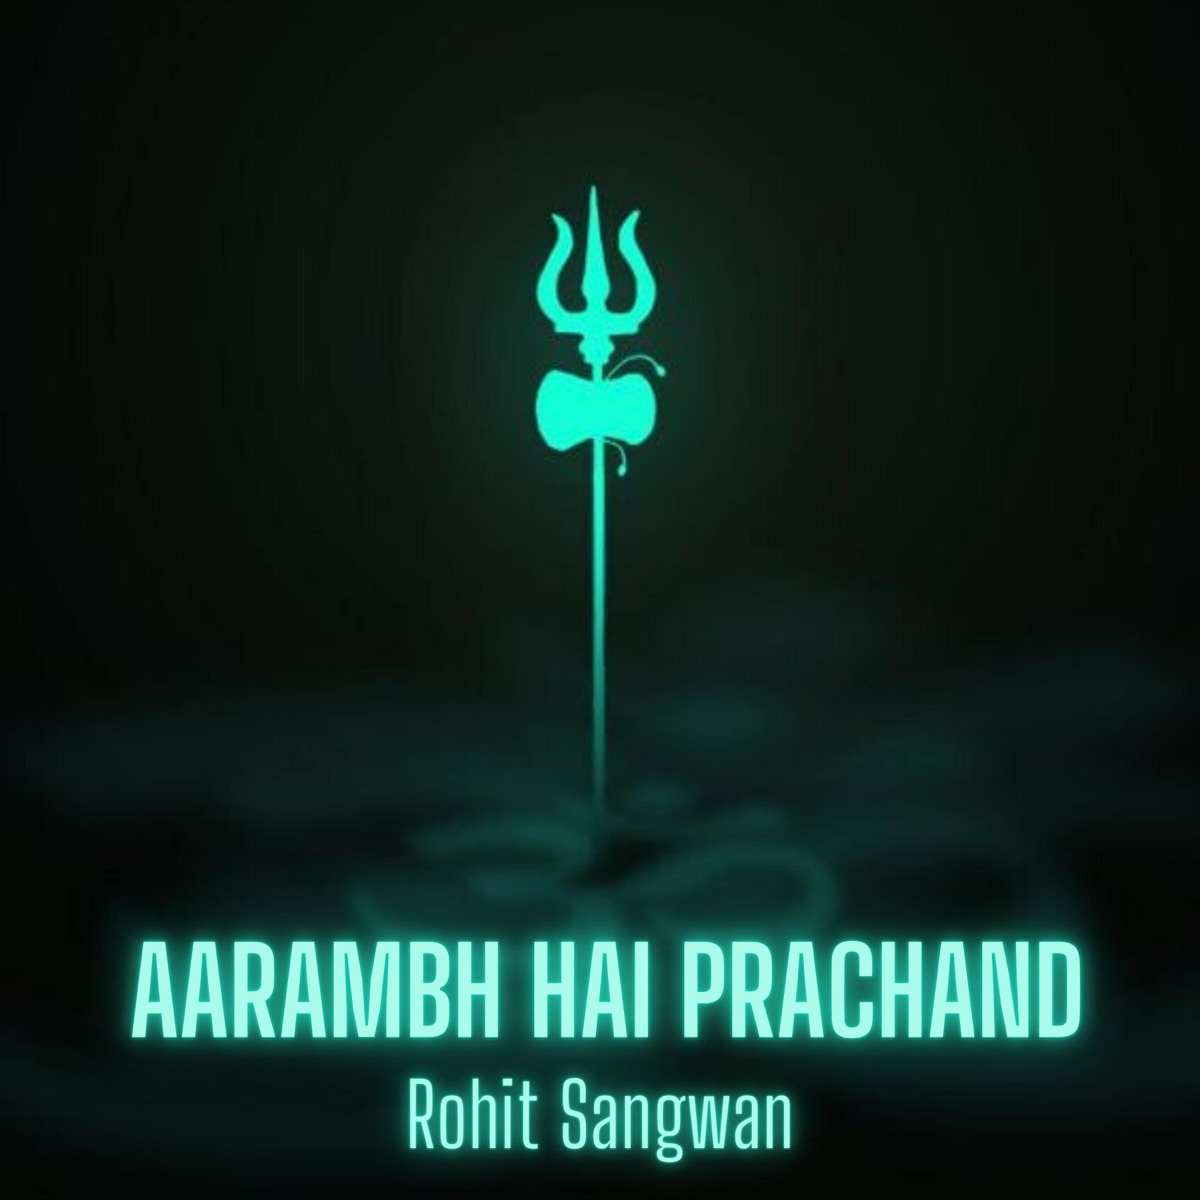 Aarmabh Hai Prachand X Polozehnie by Shrylox — Song on Apple Music